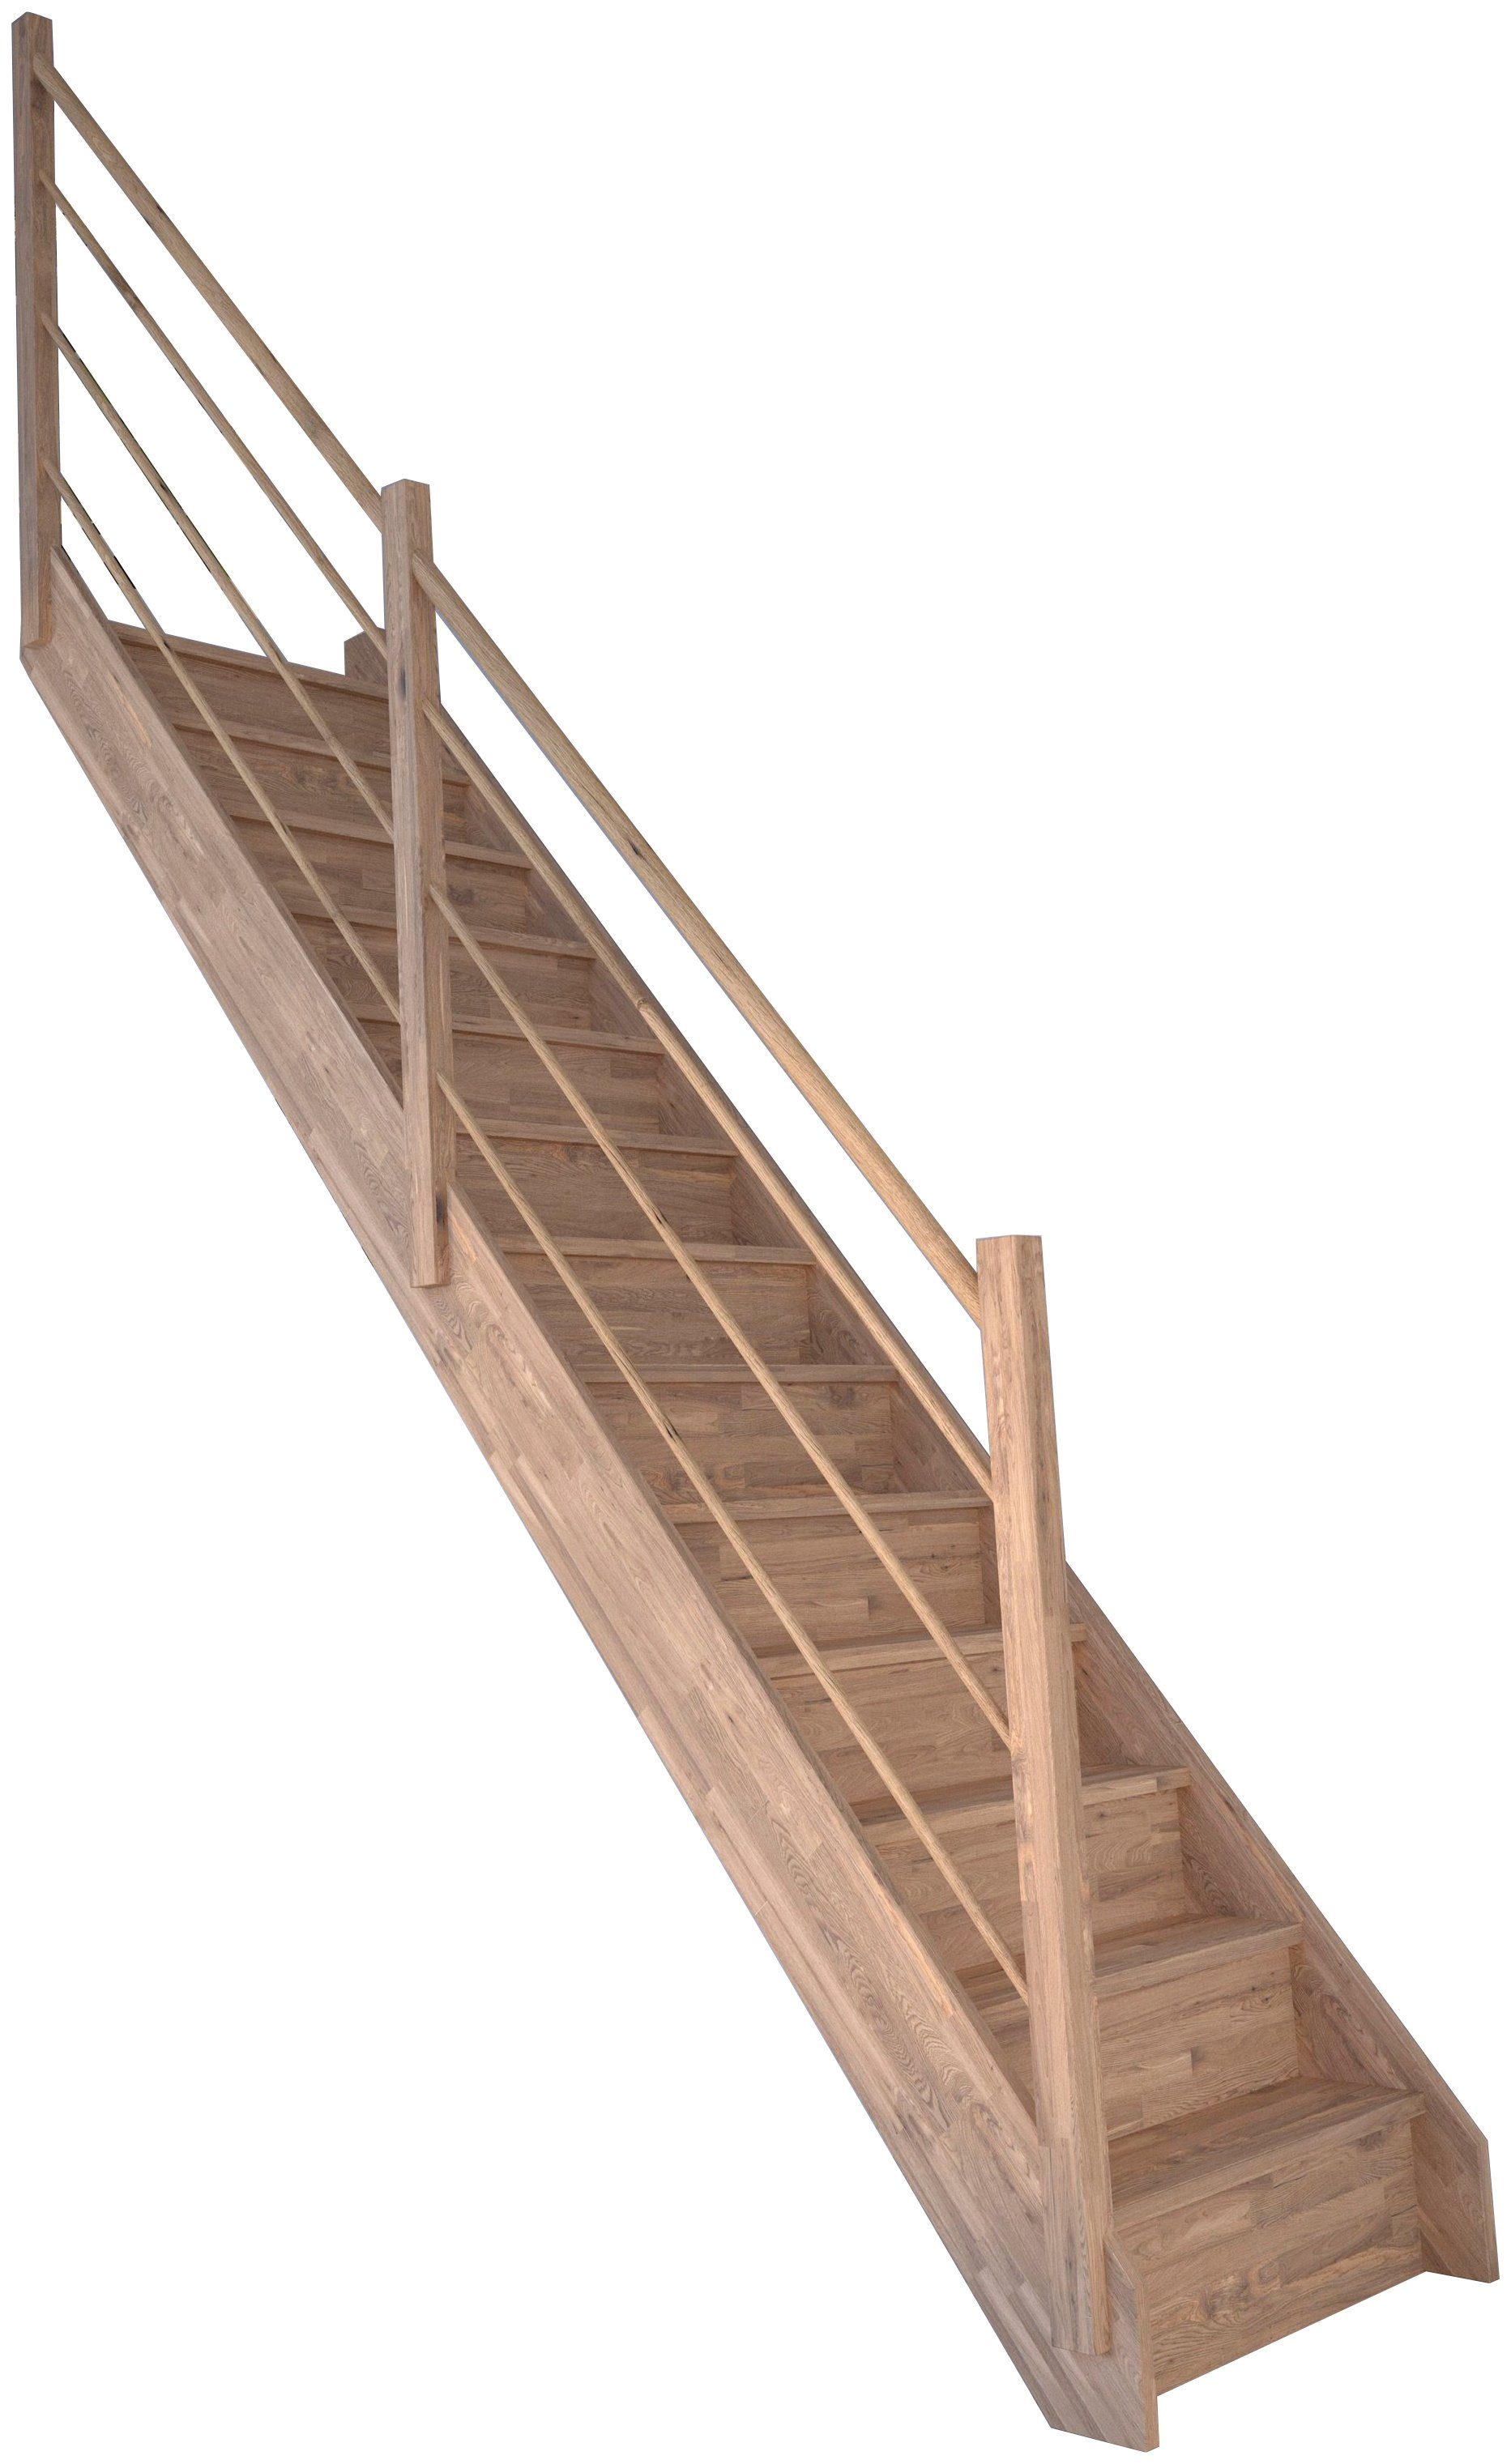 Holz-Holz Wangenteile Geschosshöhen bis Durchgehende Starwood 300 cm, Geländer für Raumspartreppe geschlossen, Rhodos, Links, Stufen Design Massivholz